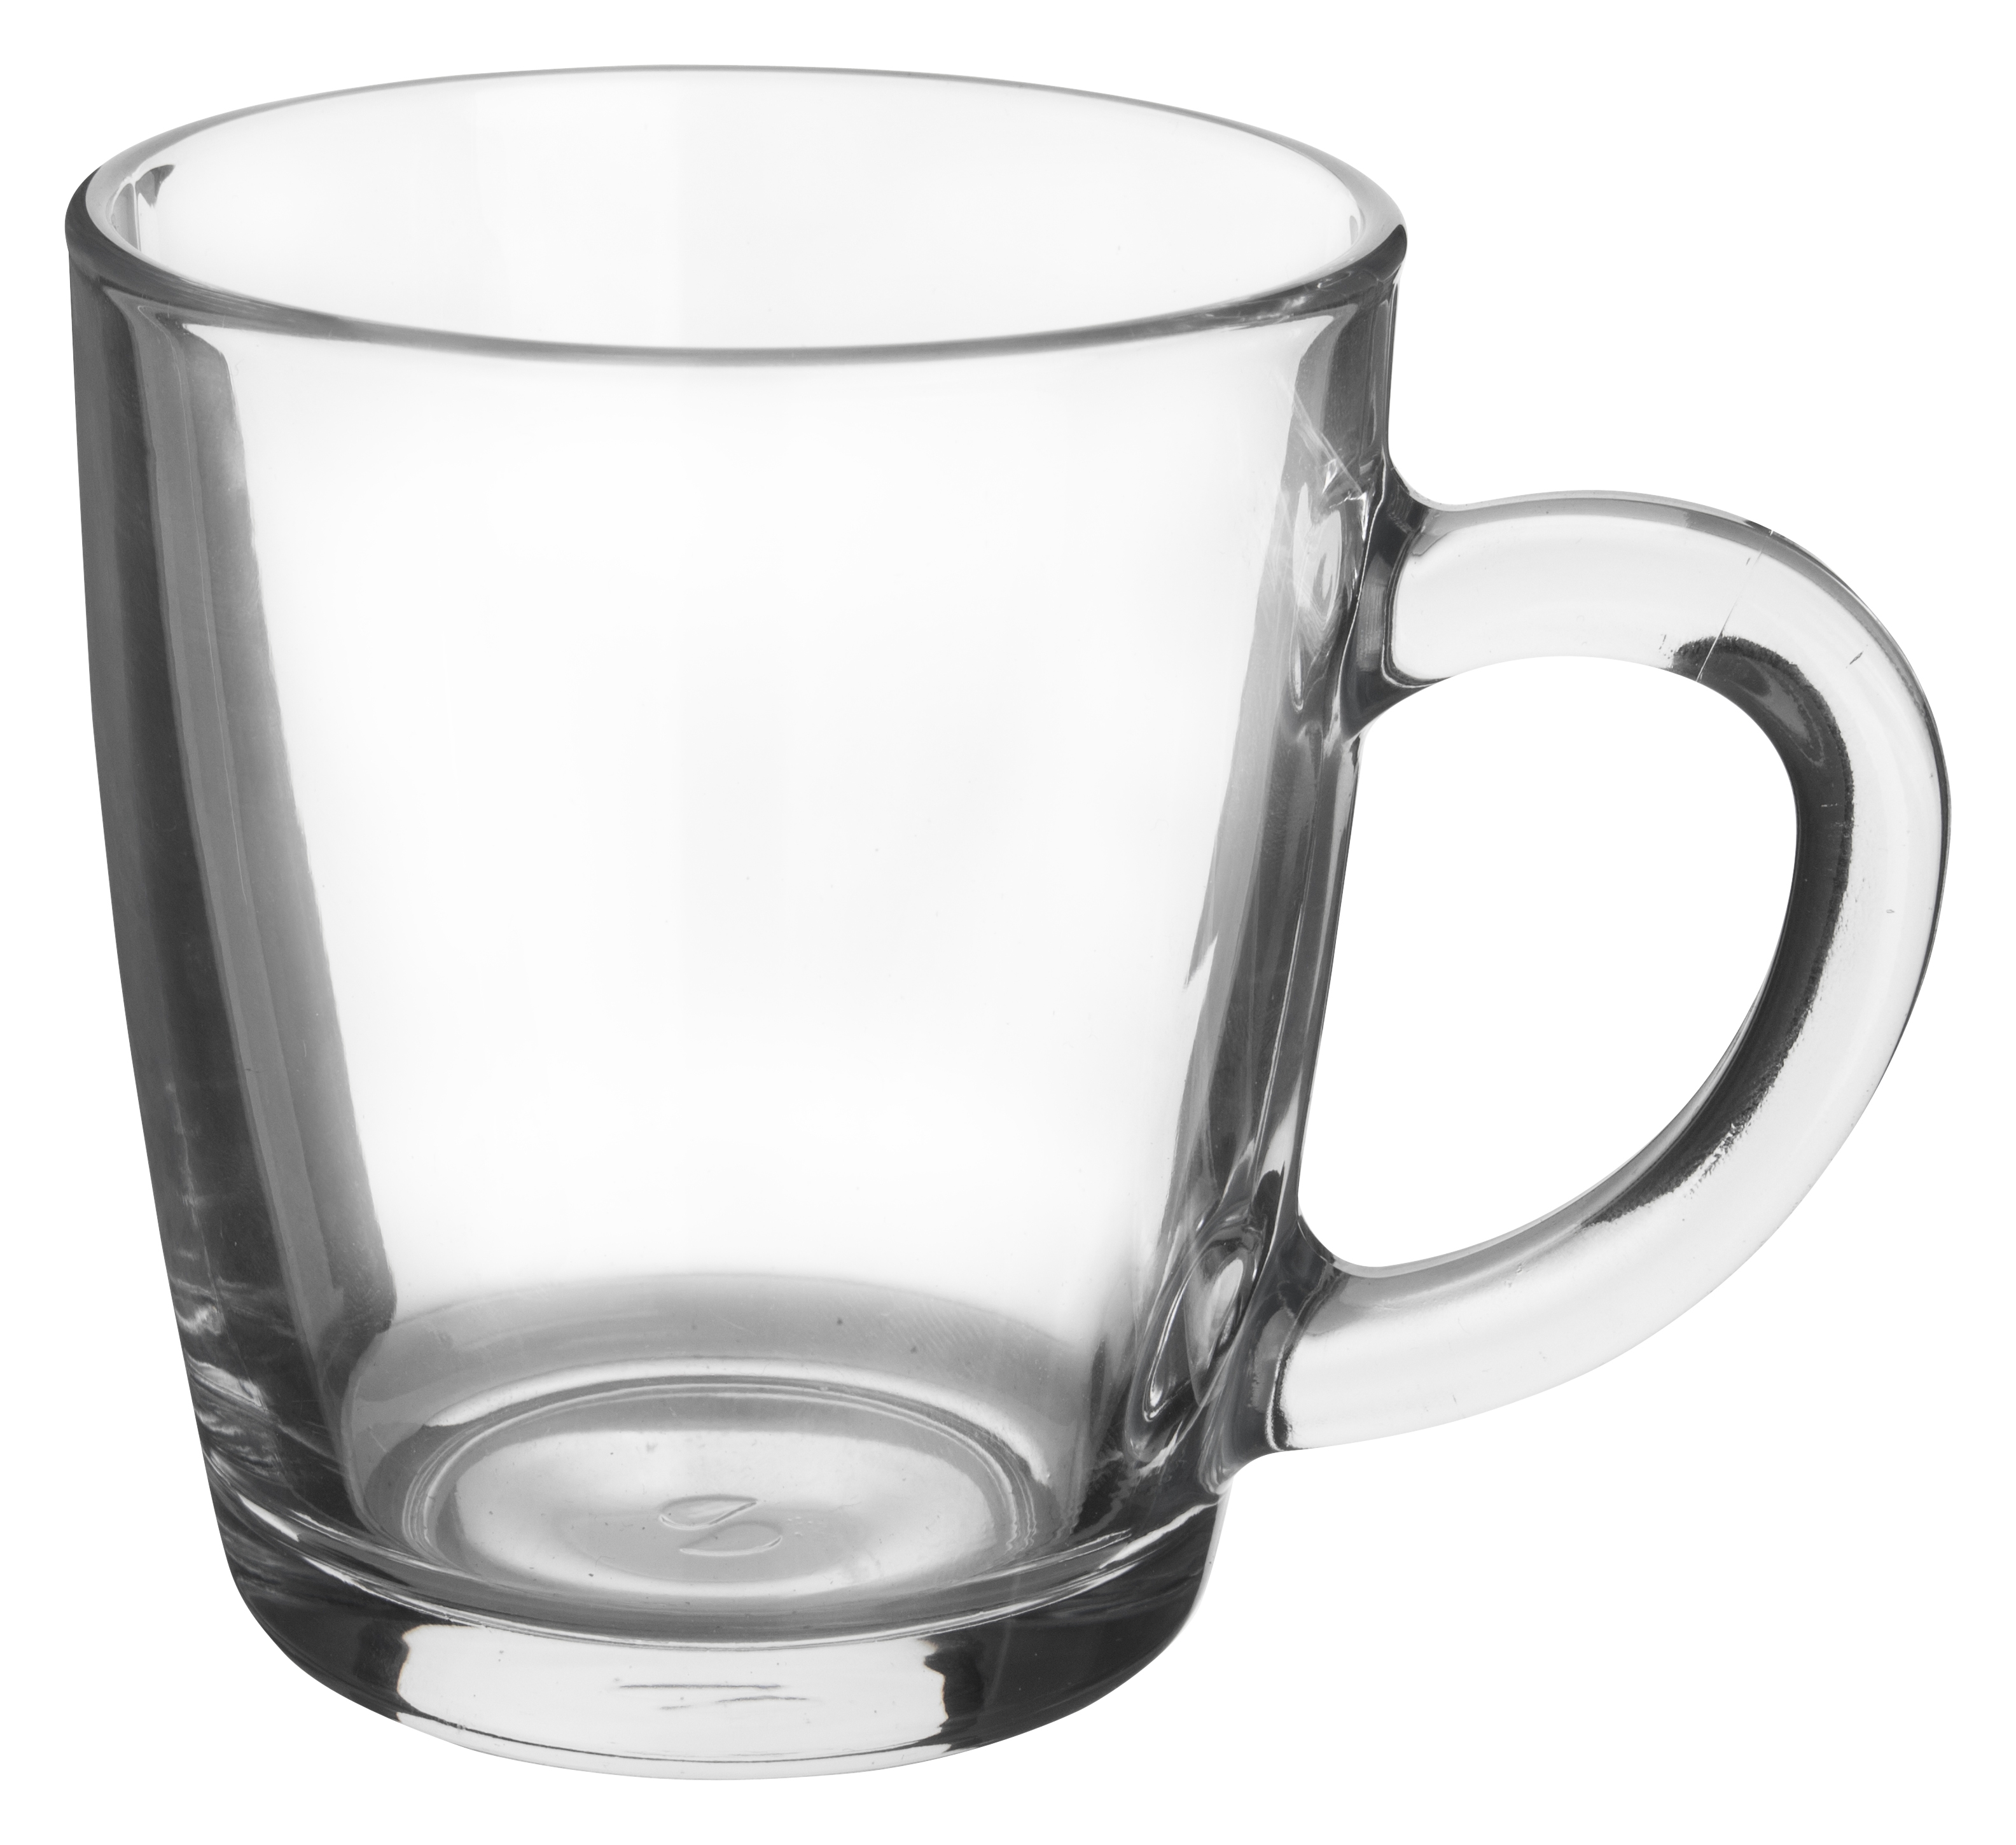 Handled mug Basic, Paabahçe - 340ml (1 pc.)